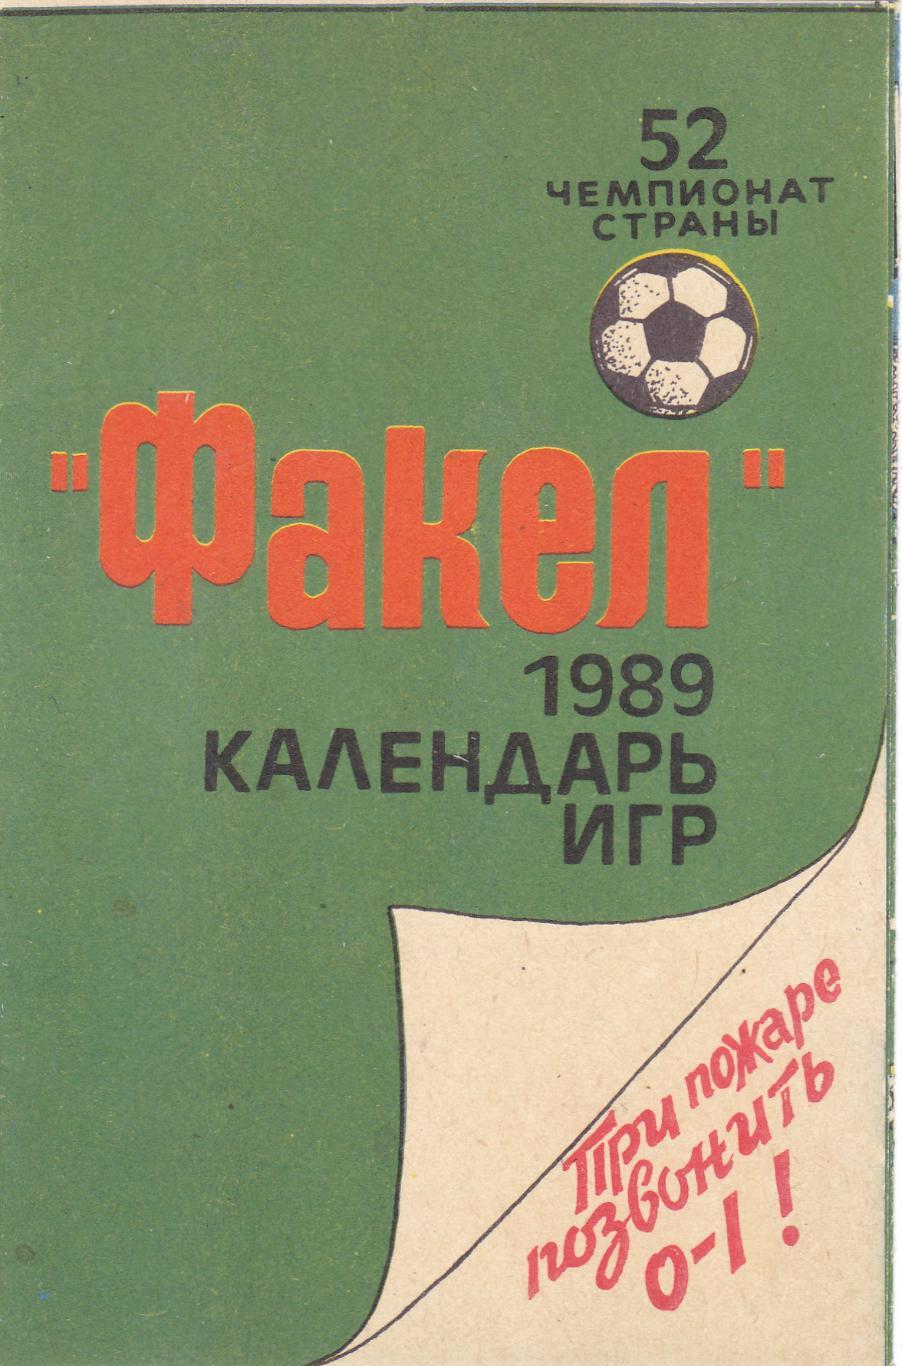 Факел (Воронеж) 1989 (Календарь игр)